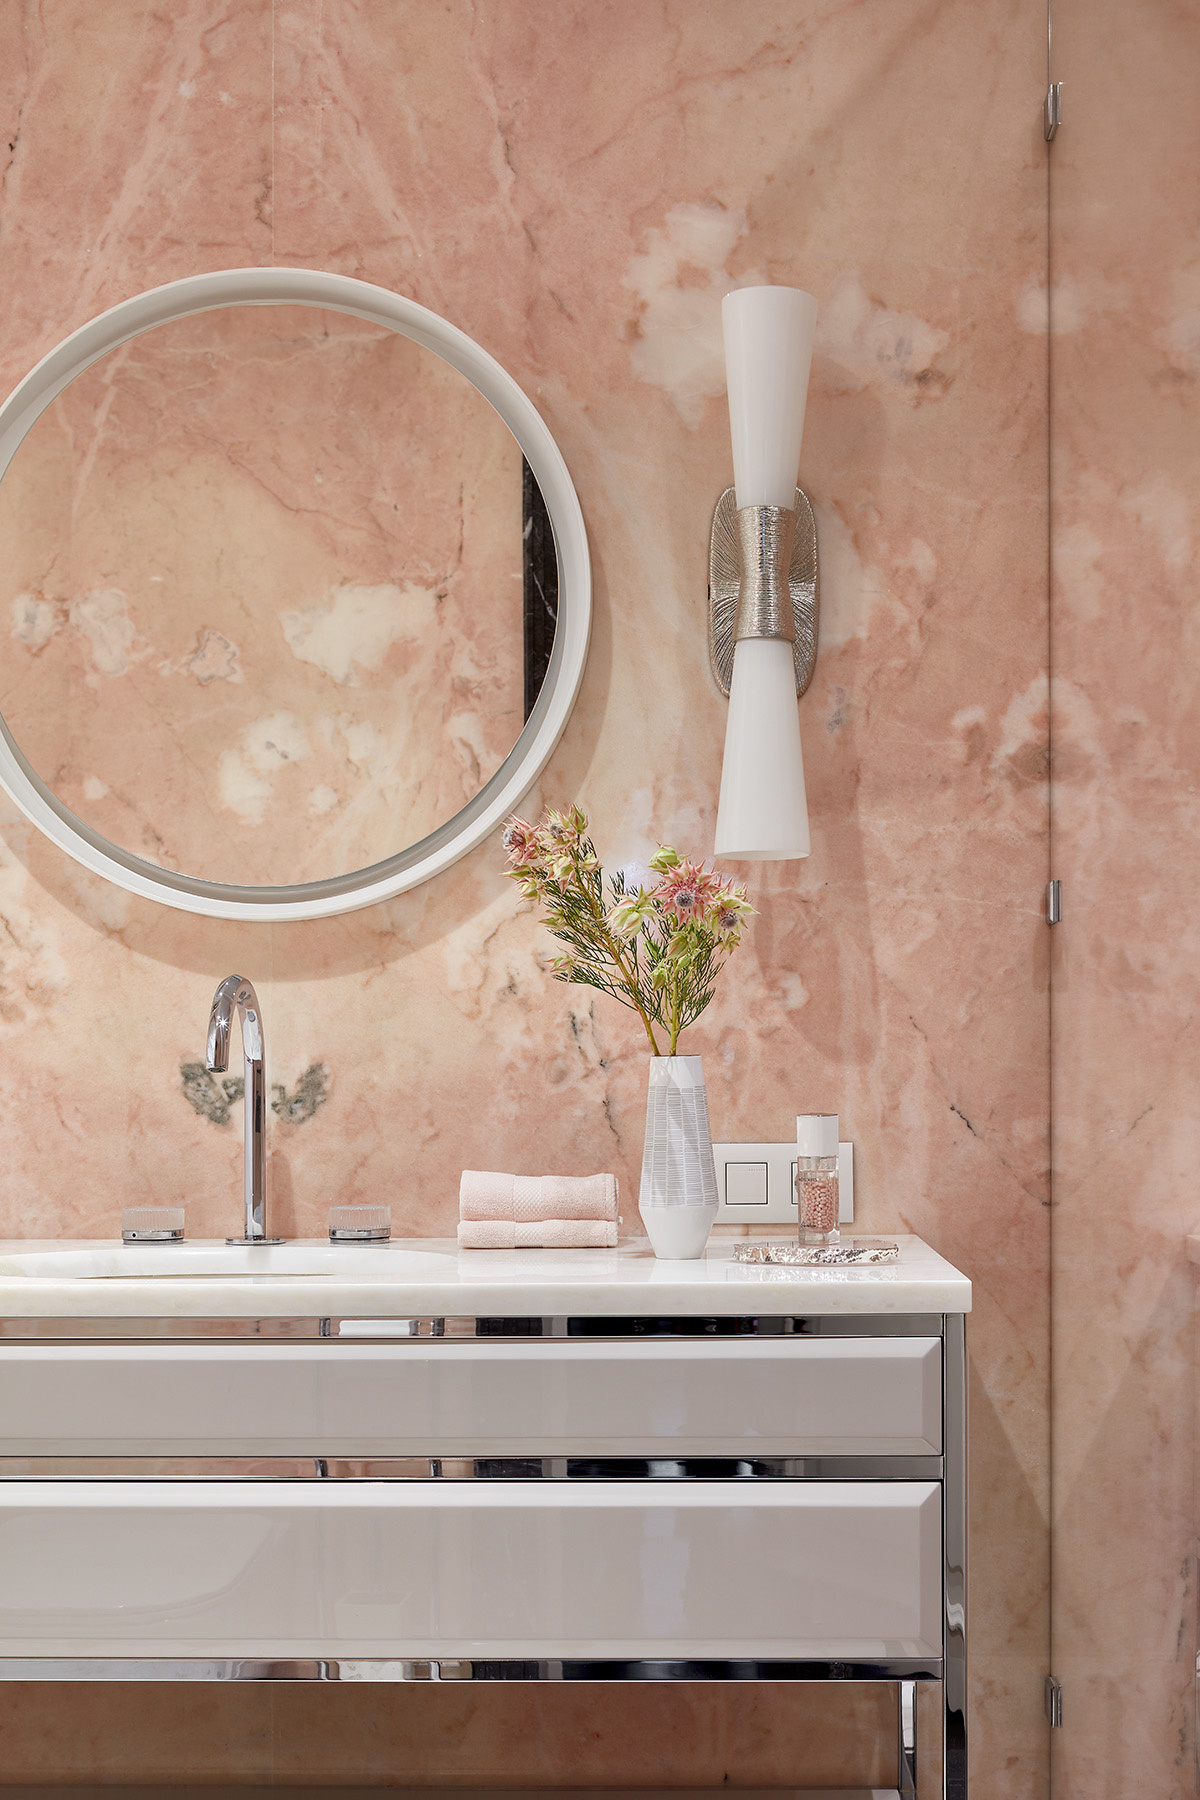 Bức tường đá sắc hồng pastel dịu dàng với những đường vân màu trắng đẹp như áng mây bồng bềnh, cho không gian phòng tắm đẹp hơn cả một bức tranh nghệ thuật.